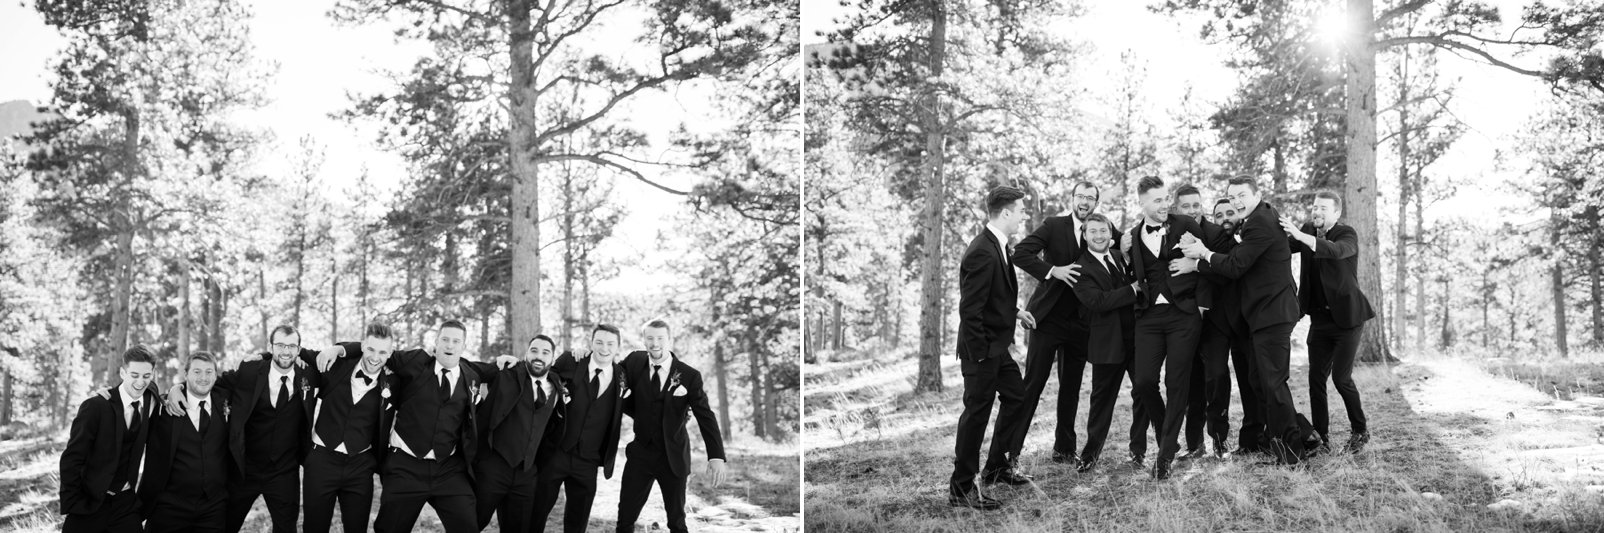 groomsmen photos at della terra mountain wedding